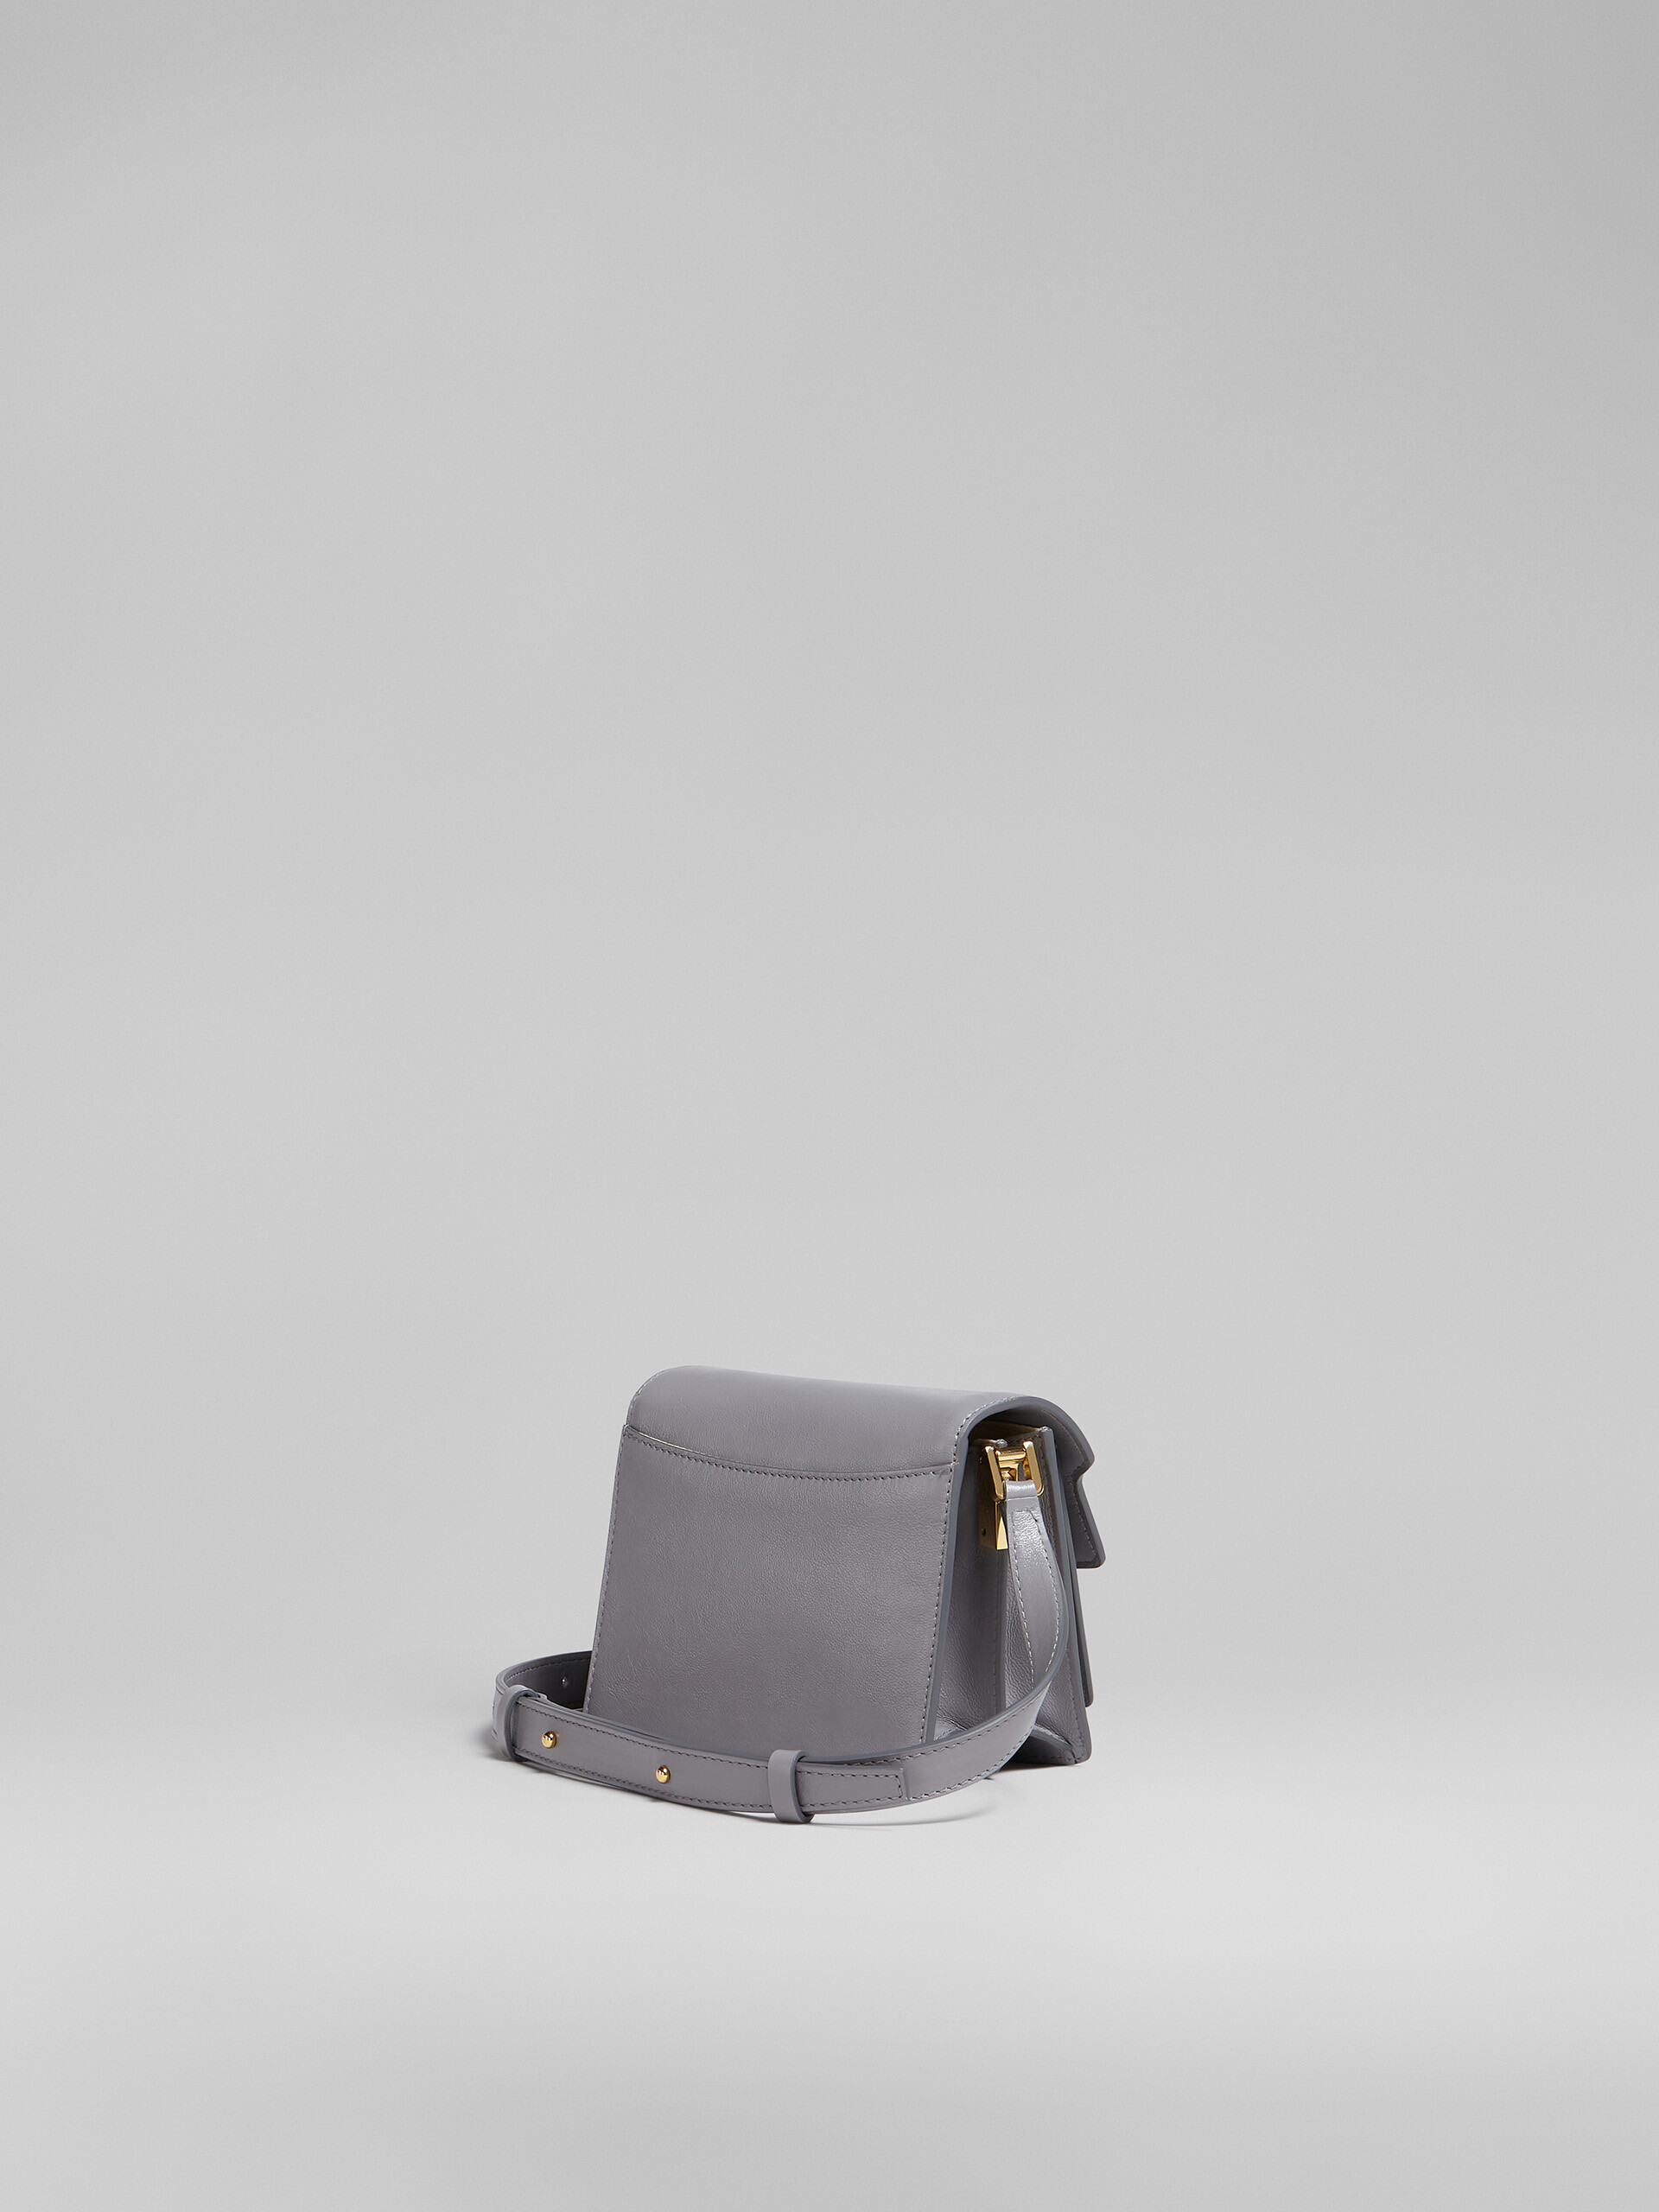 TRUNK SOFT mini bag in grey leather - Shoulder Bag - Image 3